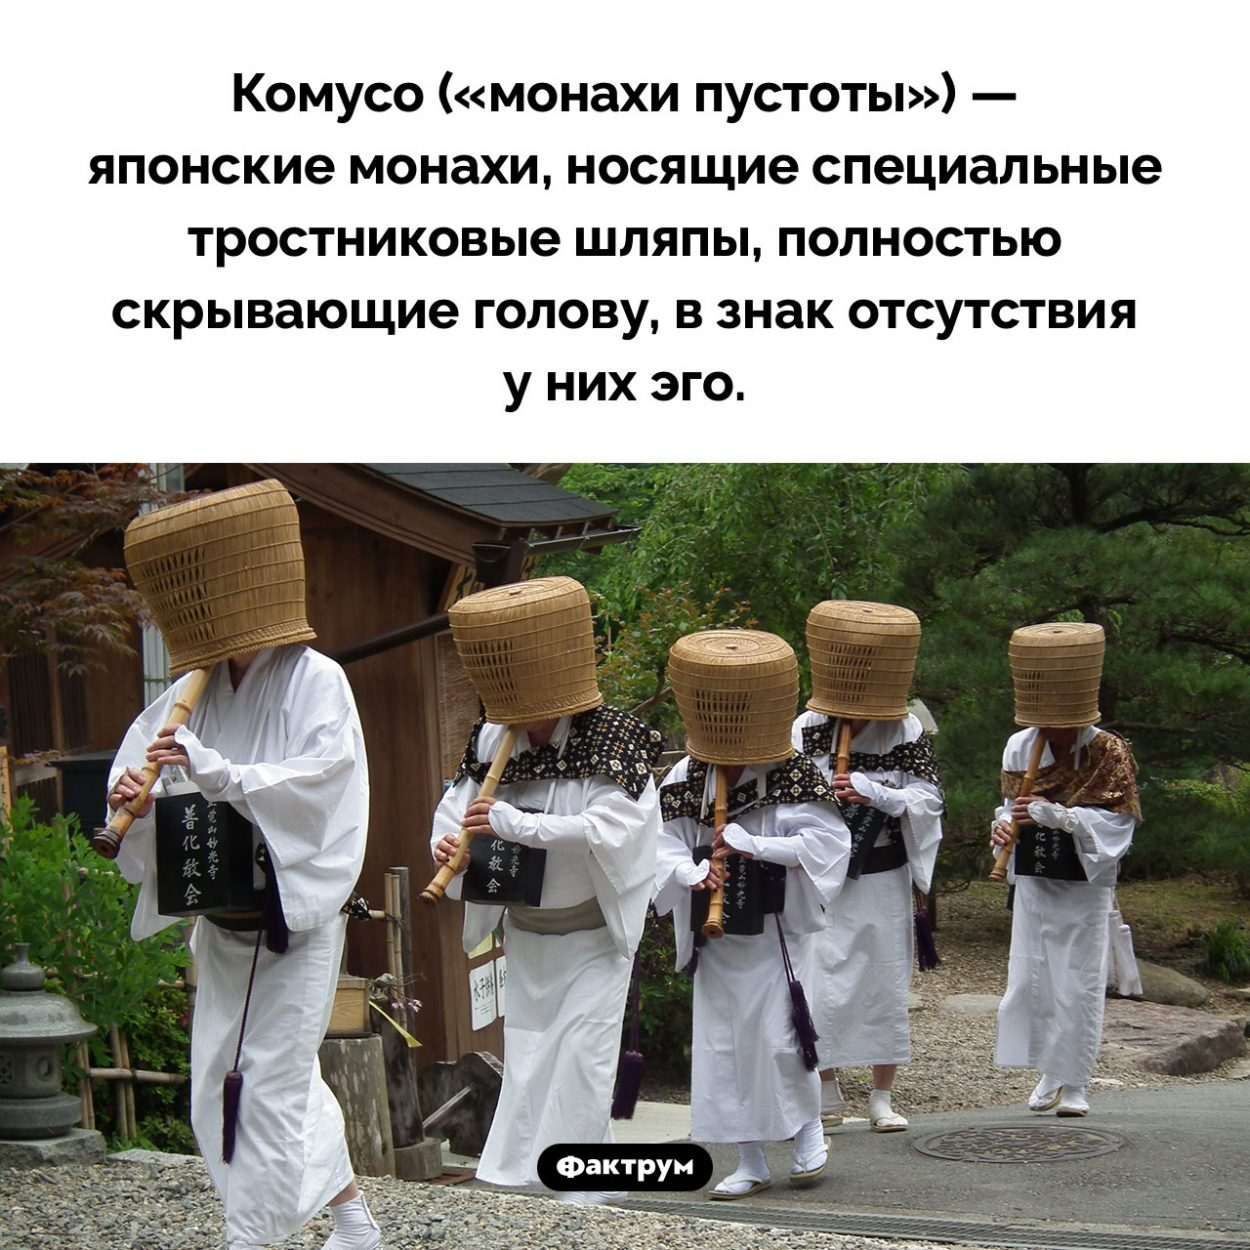 Монахи пустоты. Комусо («монахи пустоты») — японские монахи, носящие специальные тростниковые шляпы, полностью скрывающие голову, в знак отсутствия у них эго.